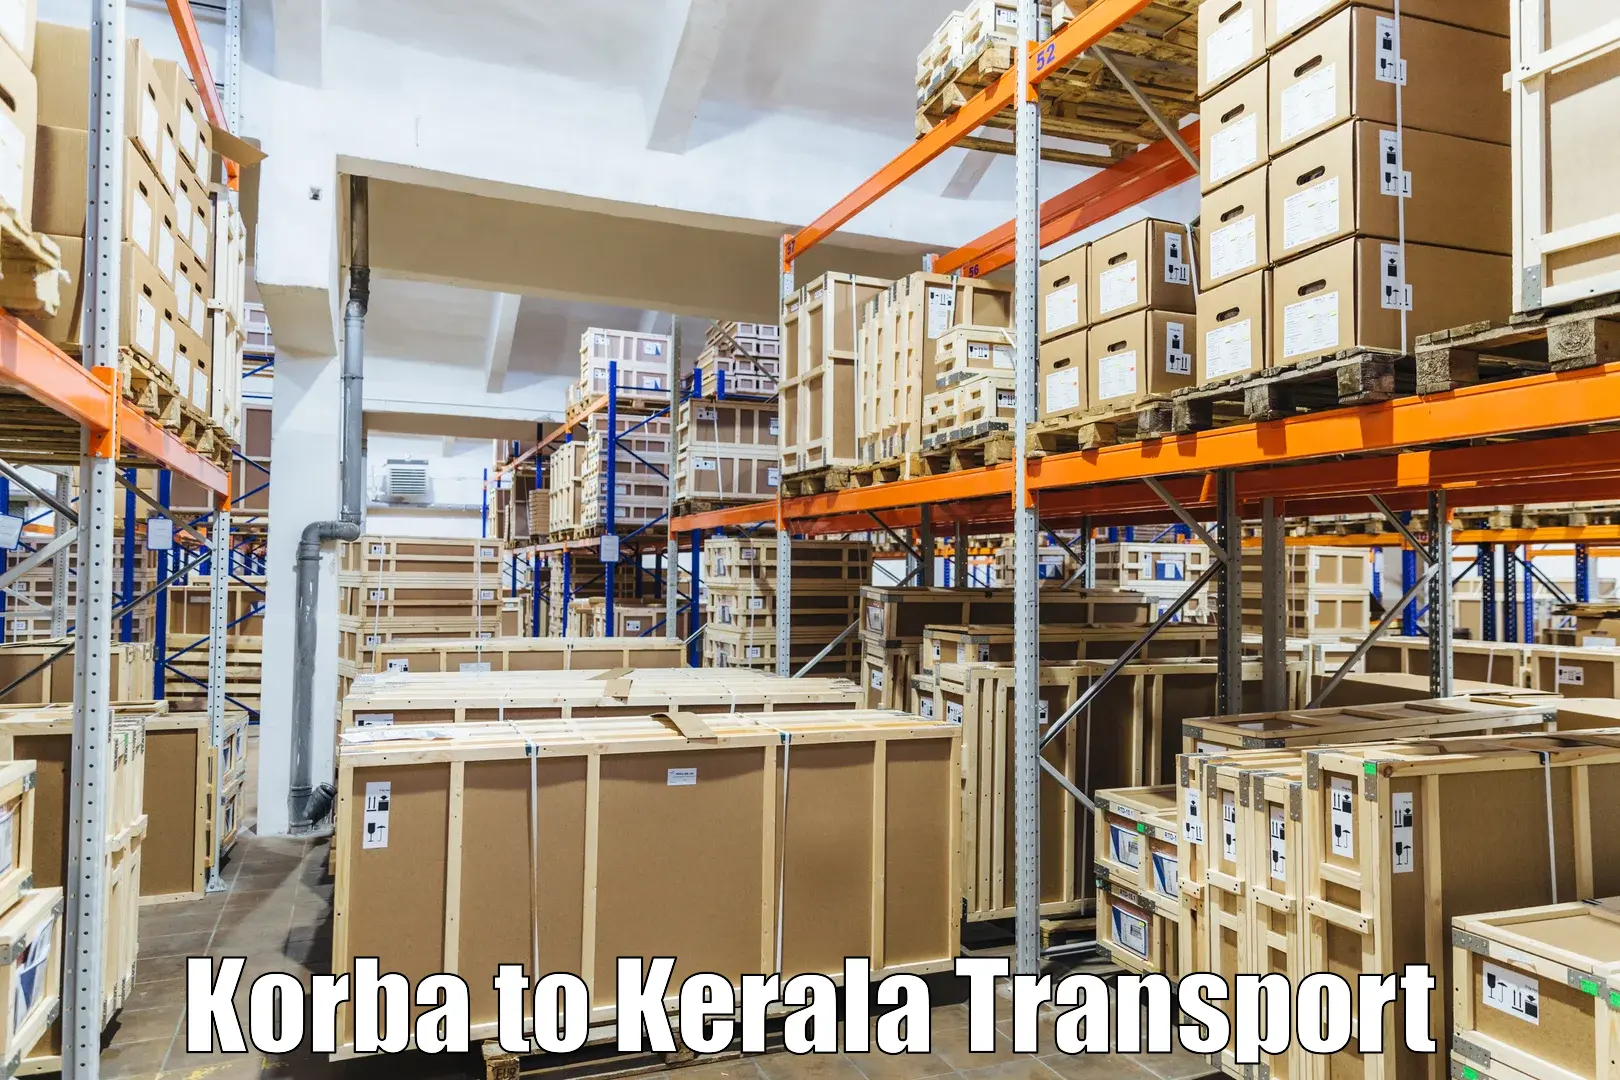 Transport in sharing Korba to Kalanjoor